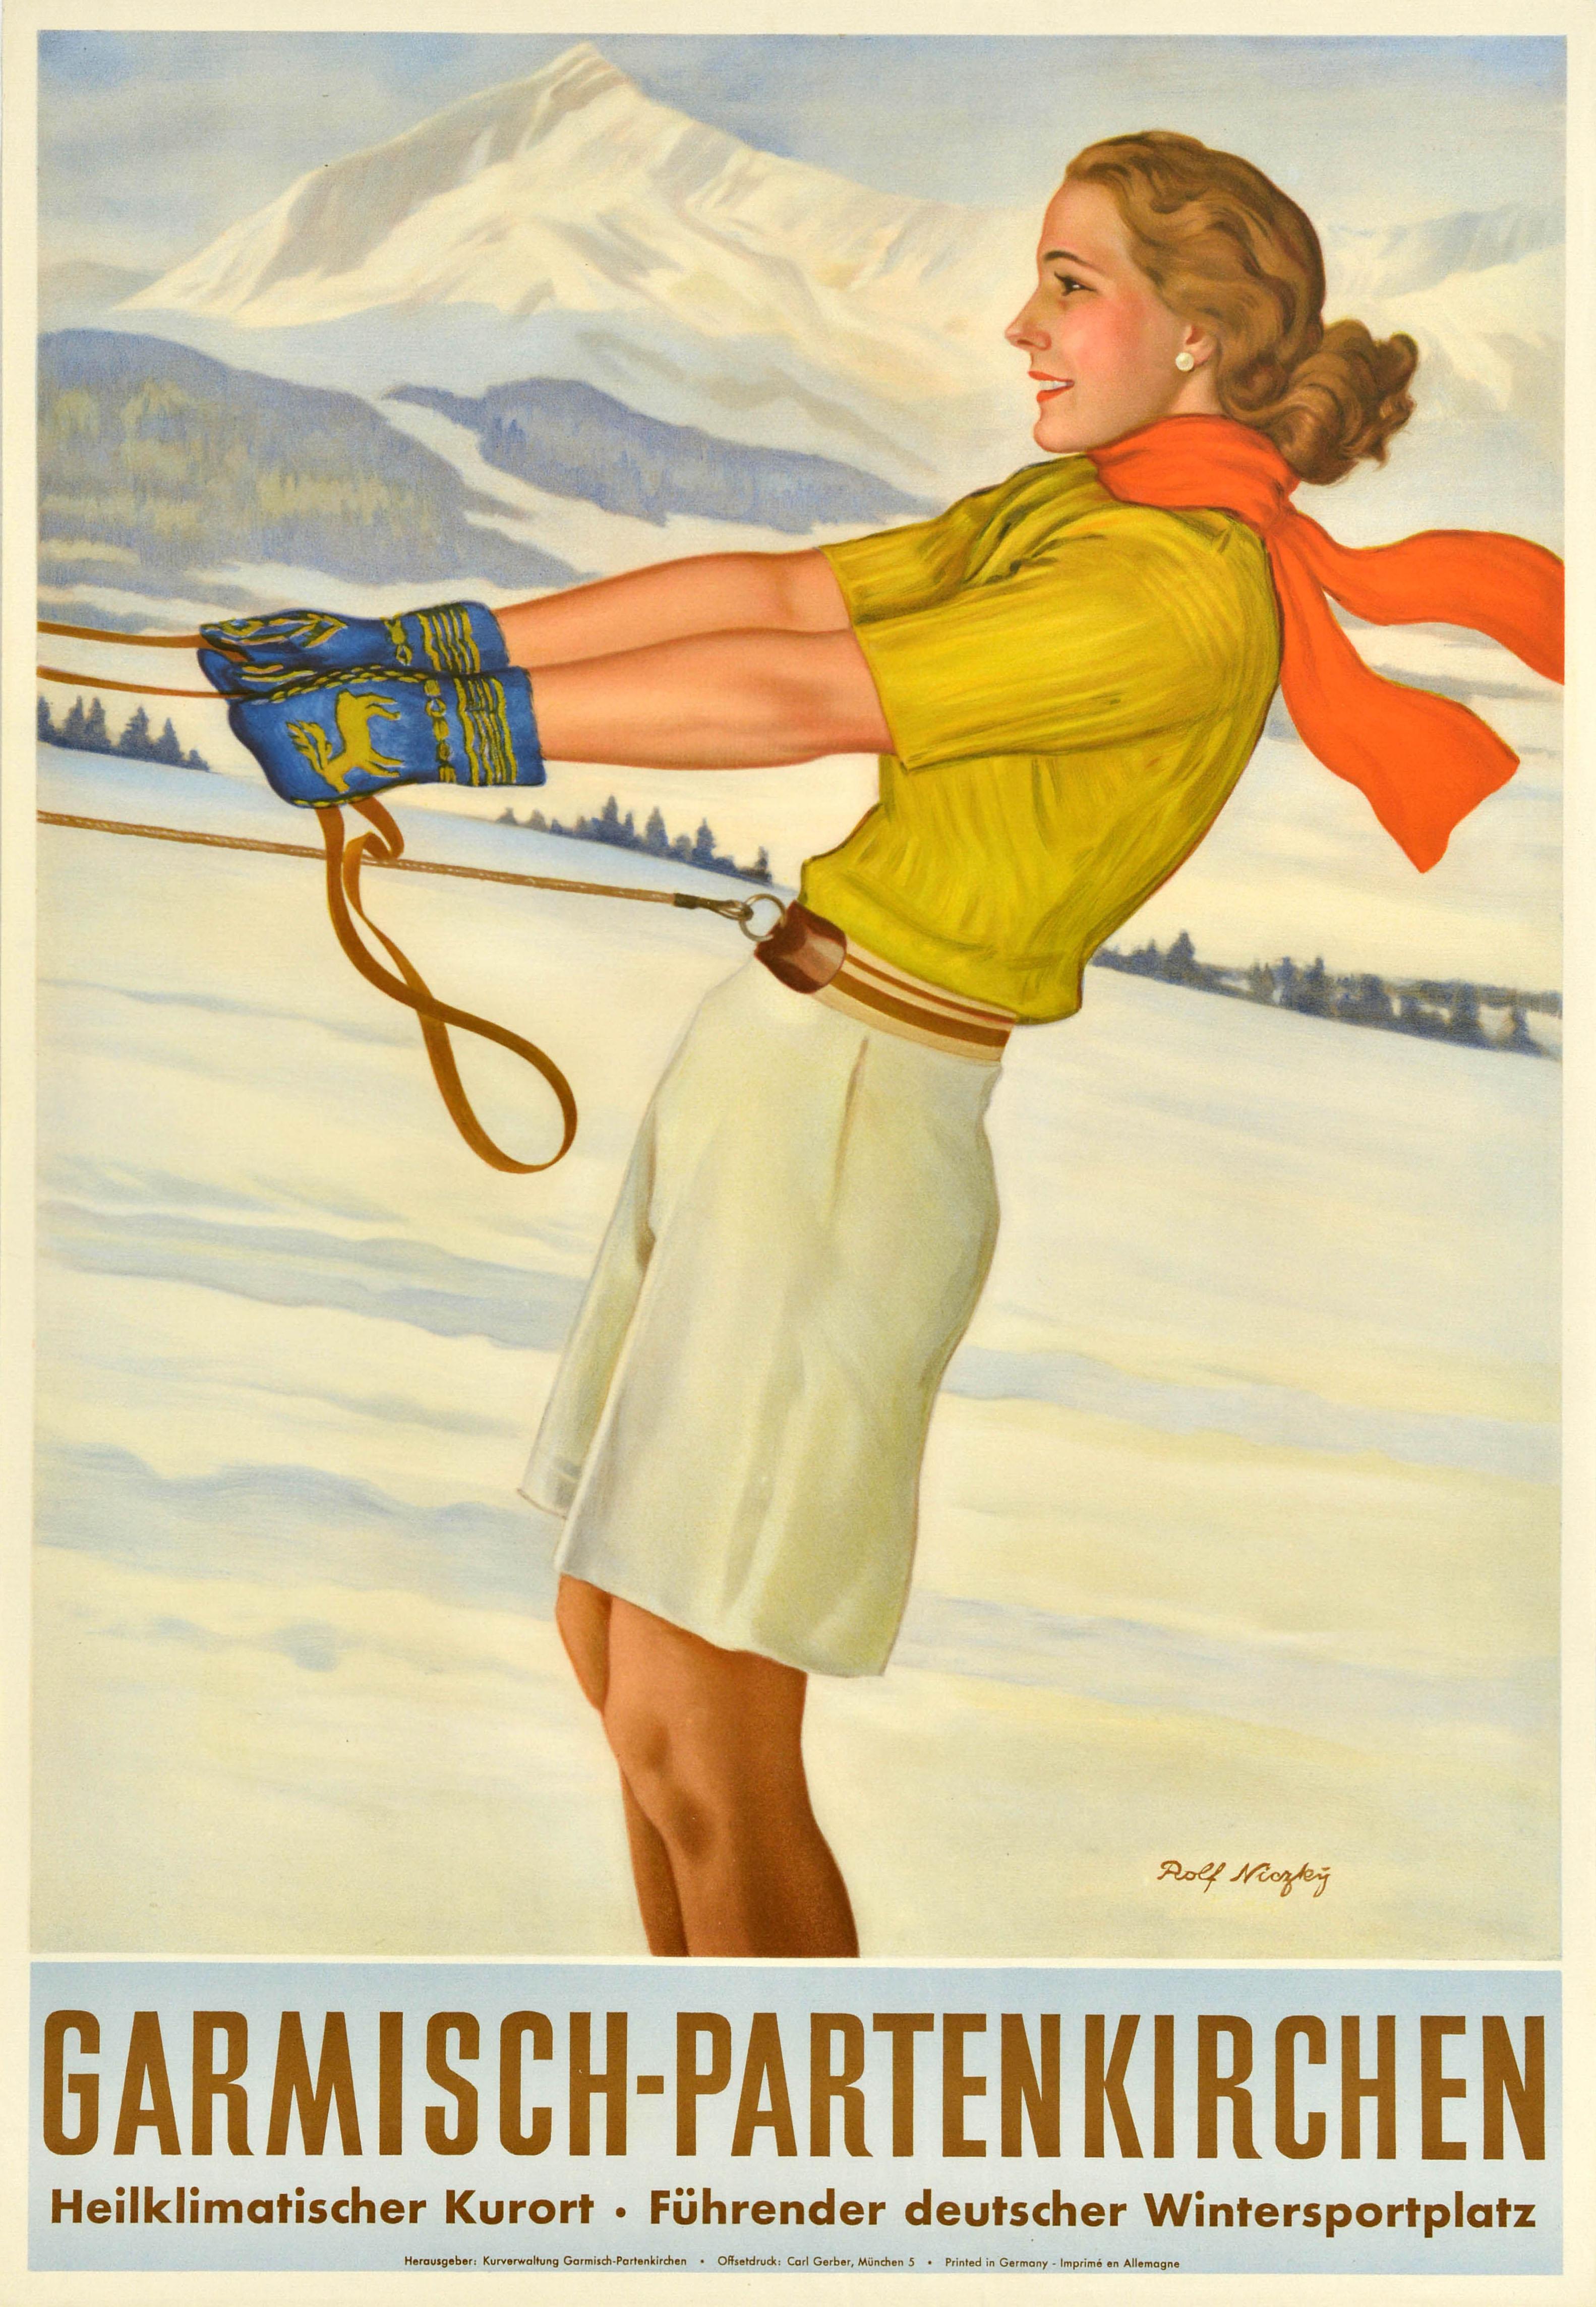 Rolf Niczky Print - Original Vintage Travel Poster Garmisch Partenkirchen Winter Sport Health Skiing